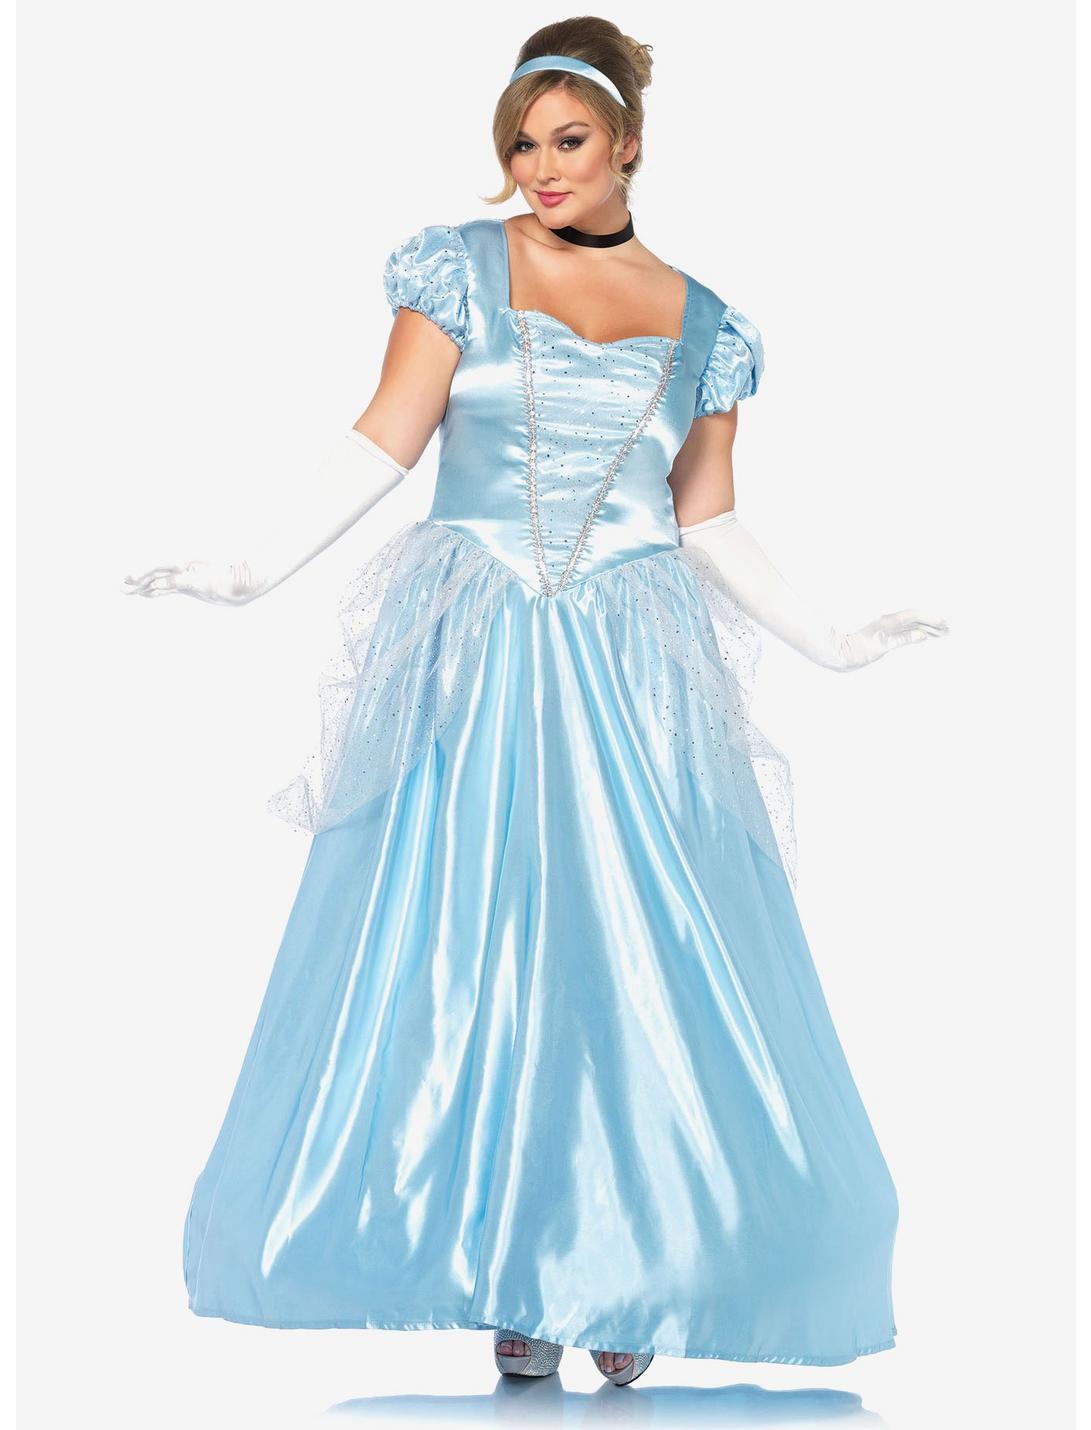 3 Piece Classic Princess Costume Plus Size, BLUE, hi-res